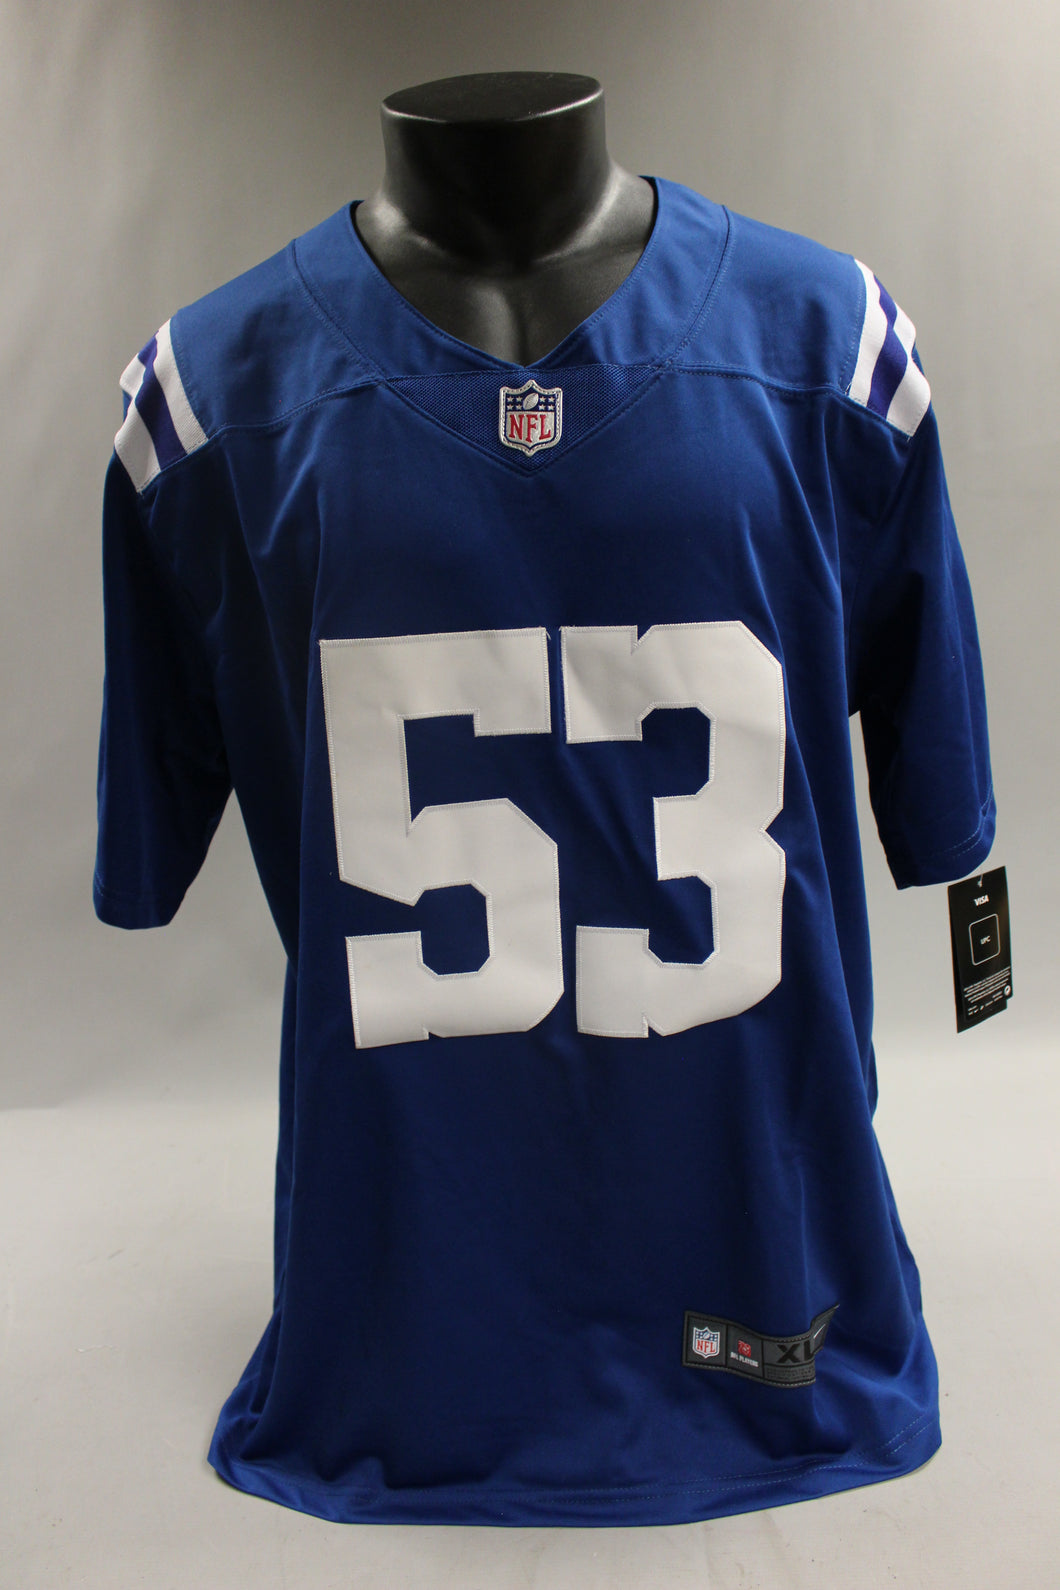 NFL Darius Leonard #53 Football Jersey - Colts - XL- New